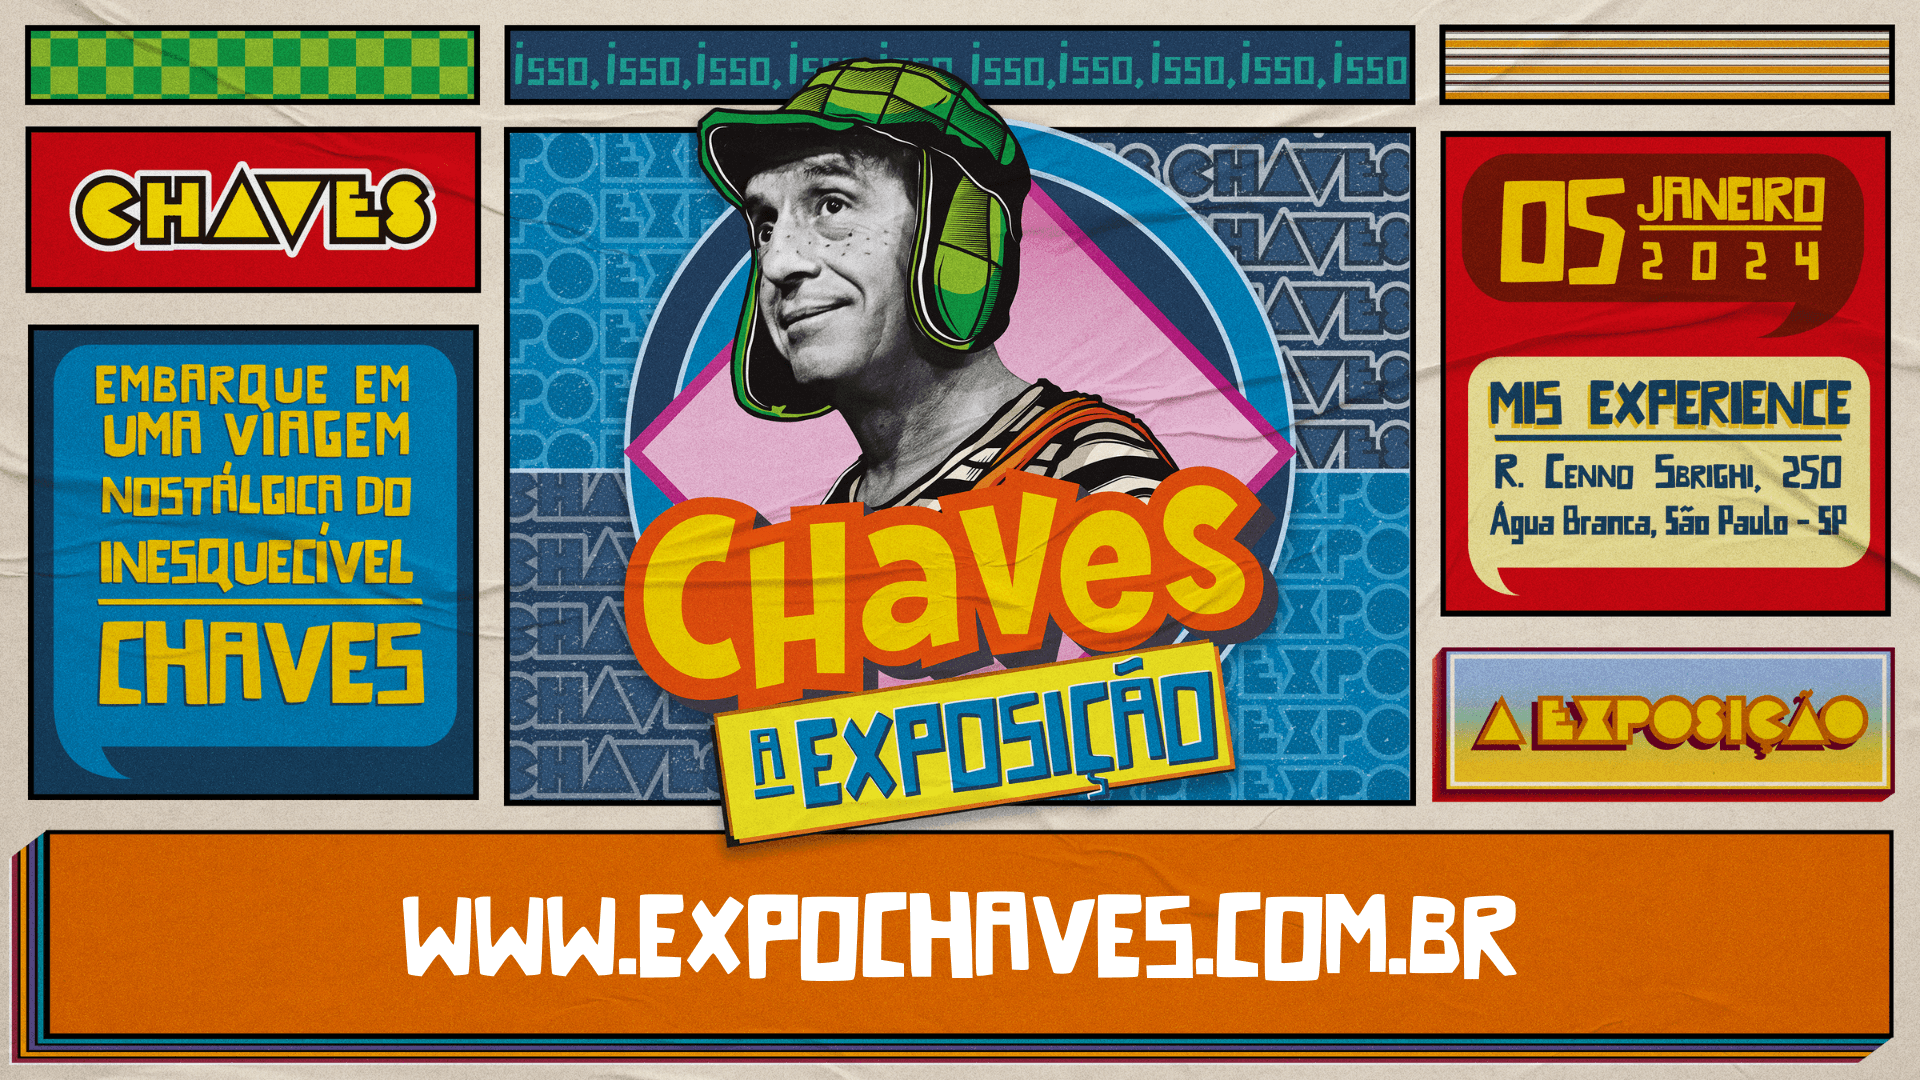 Após sucesso, MIS Experience prorroga 'Chaves: A Exposição'